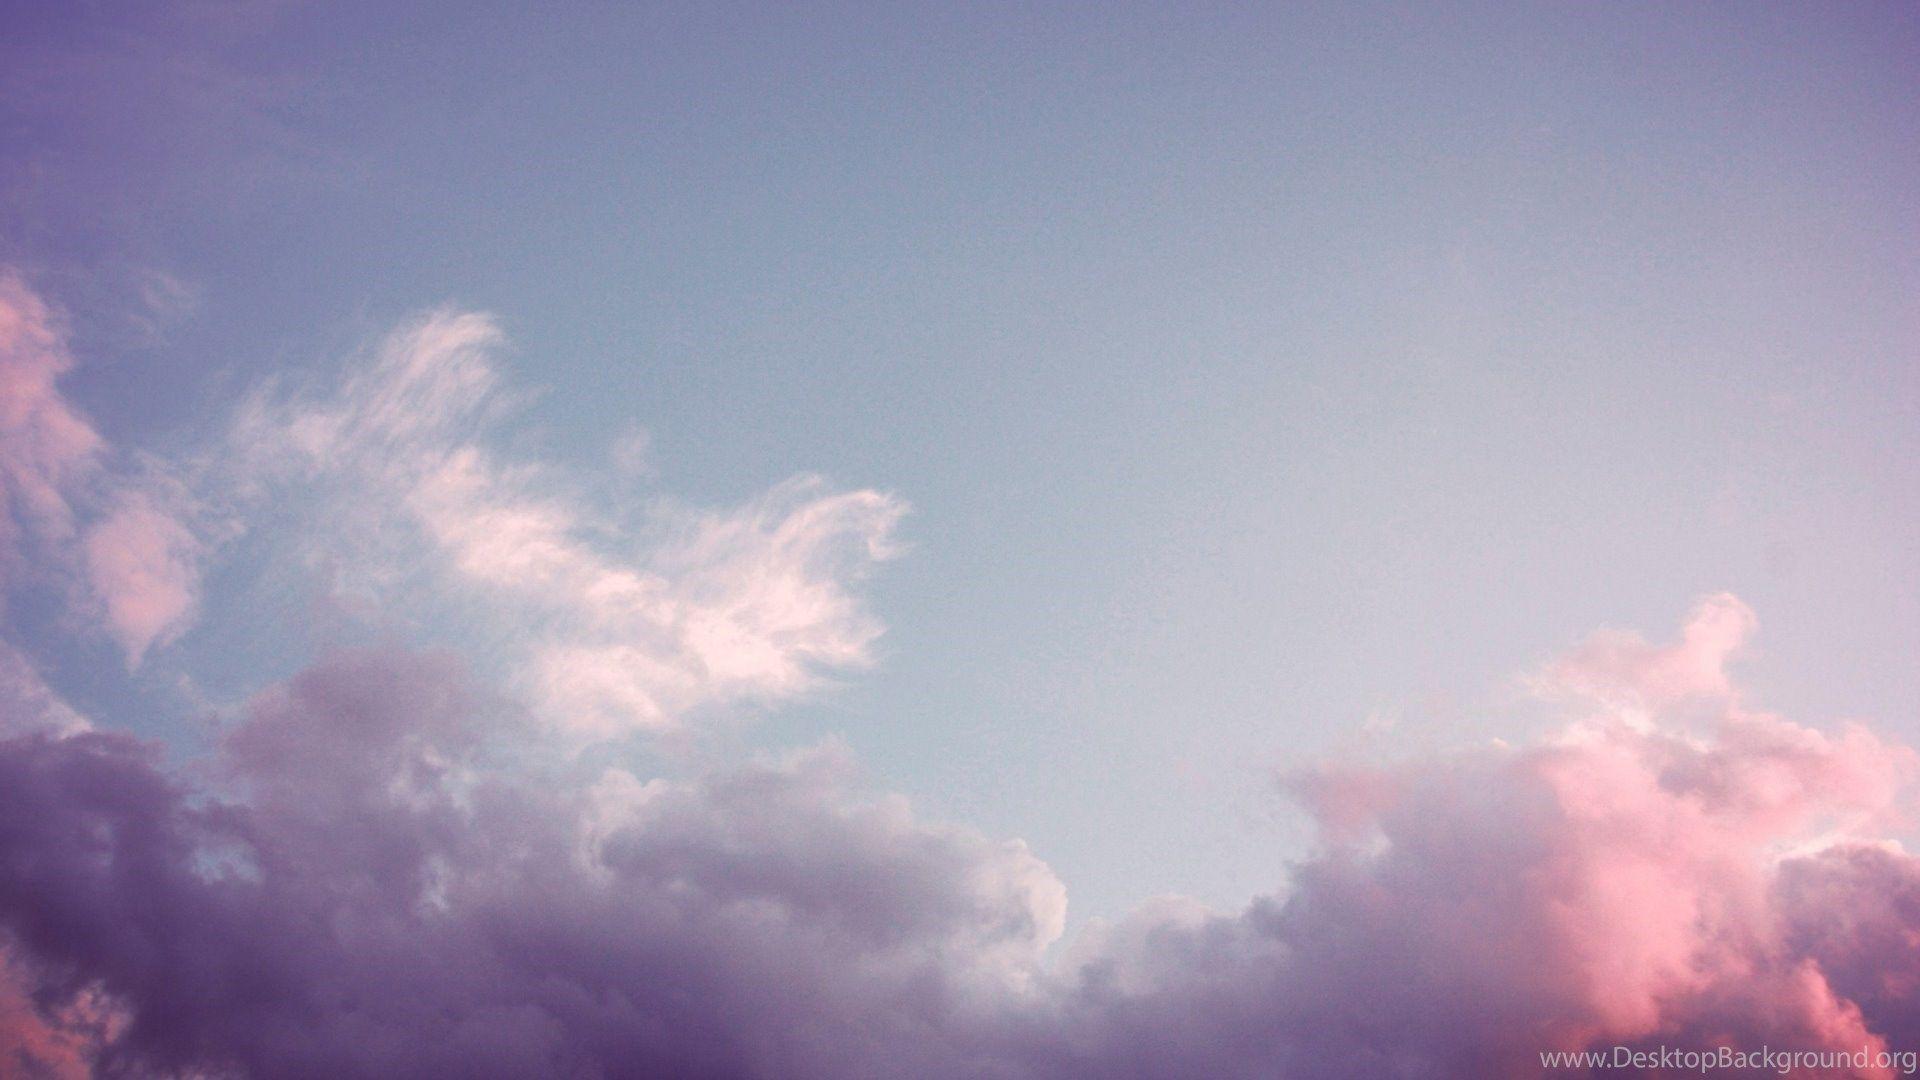 Sky Aesthetic Tumblr Desktop Wallpaper Free Sky Aesthetic